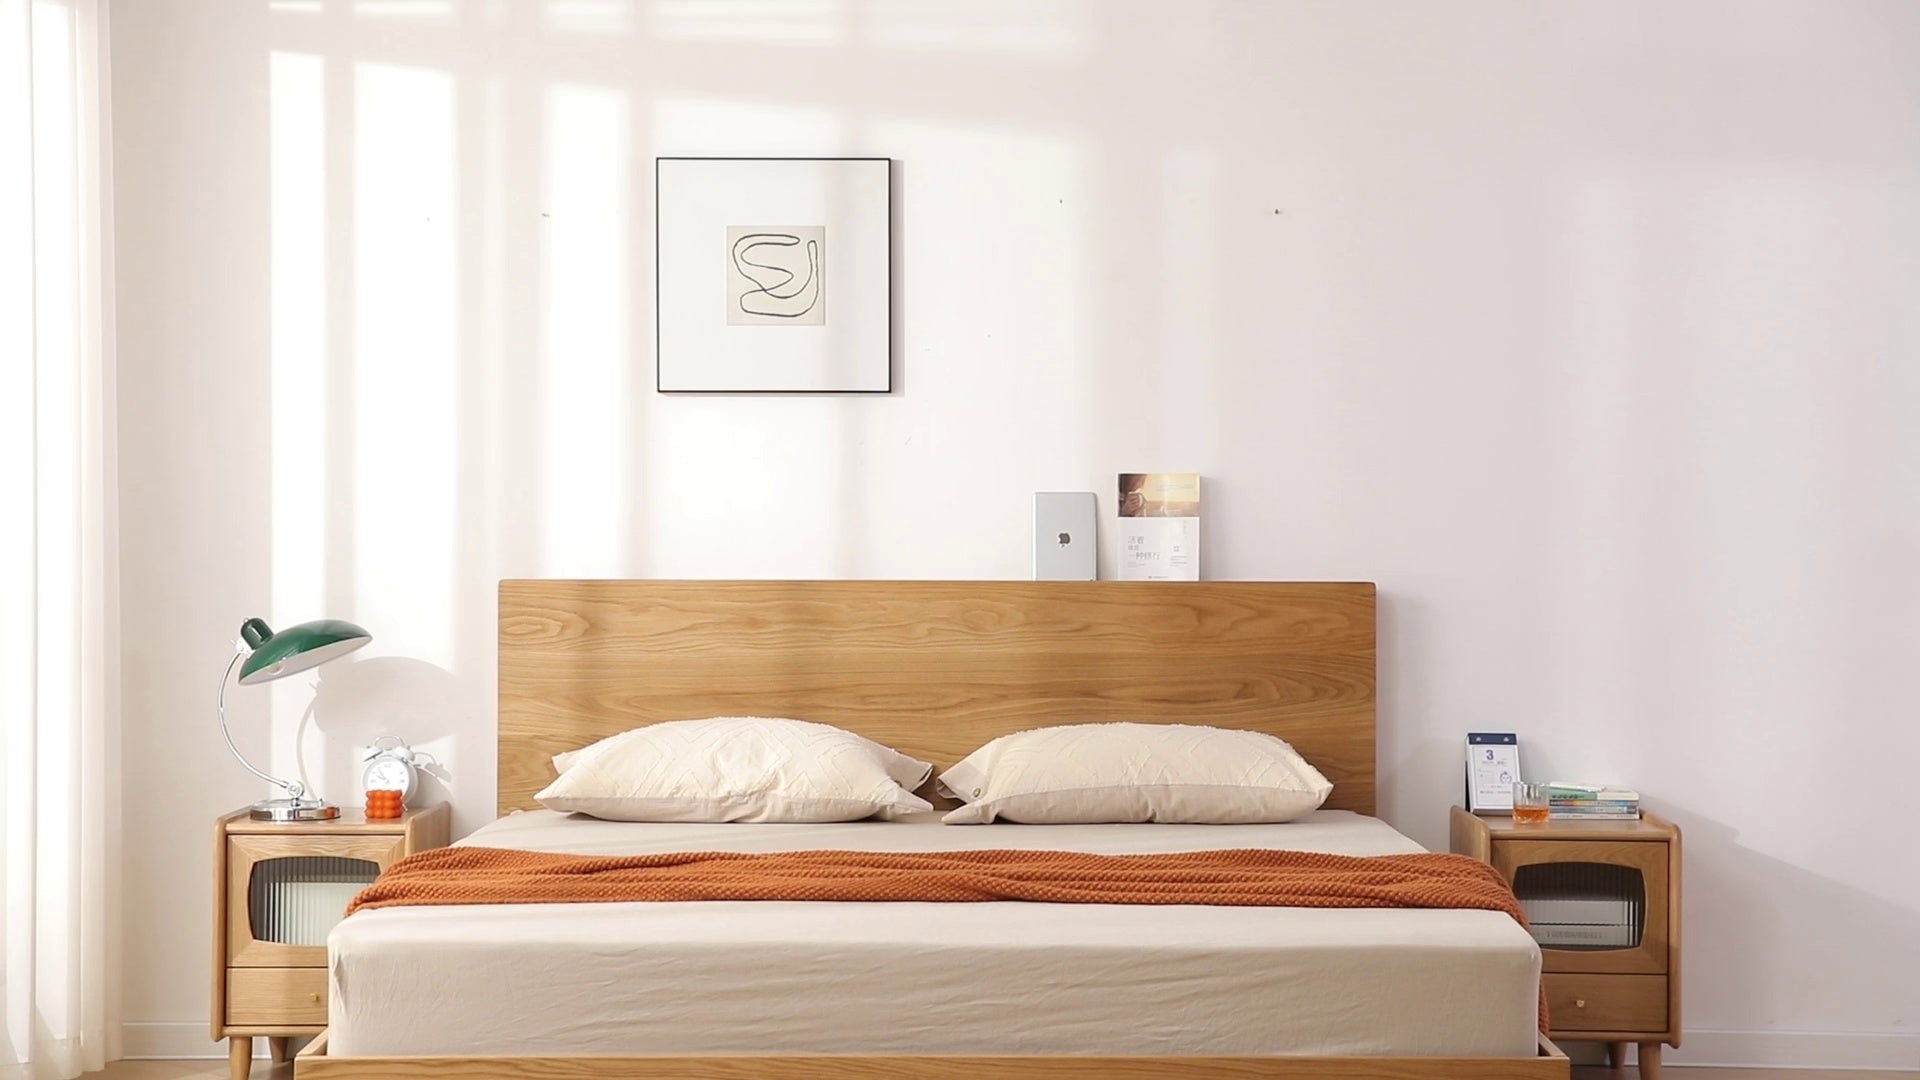 سرير من خشب البلوط، وإطار سرير من خشب البلوط بحجم كينغ